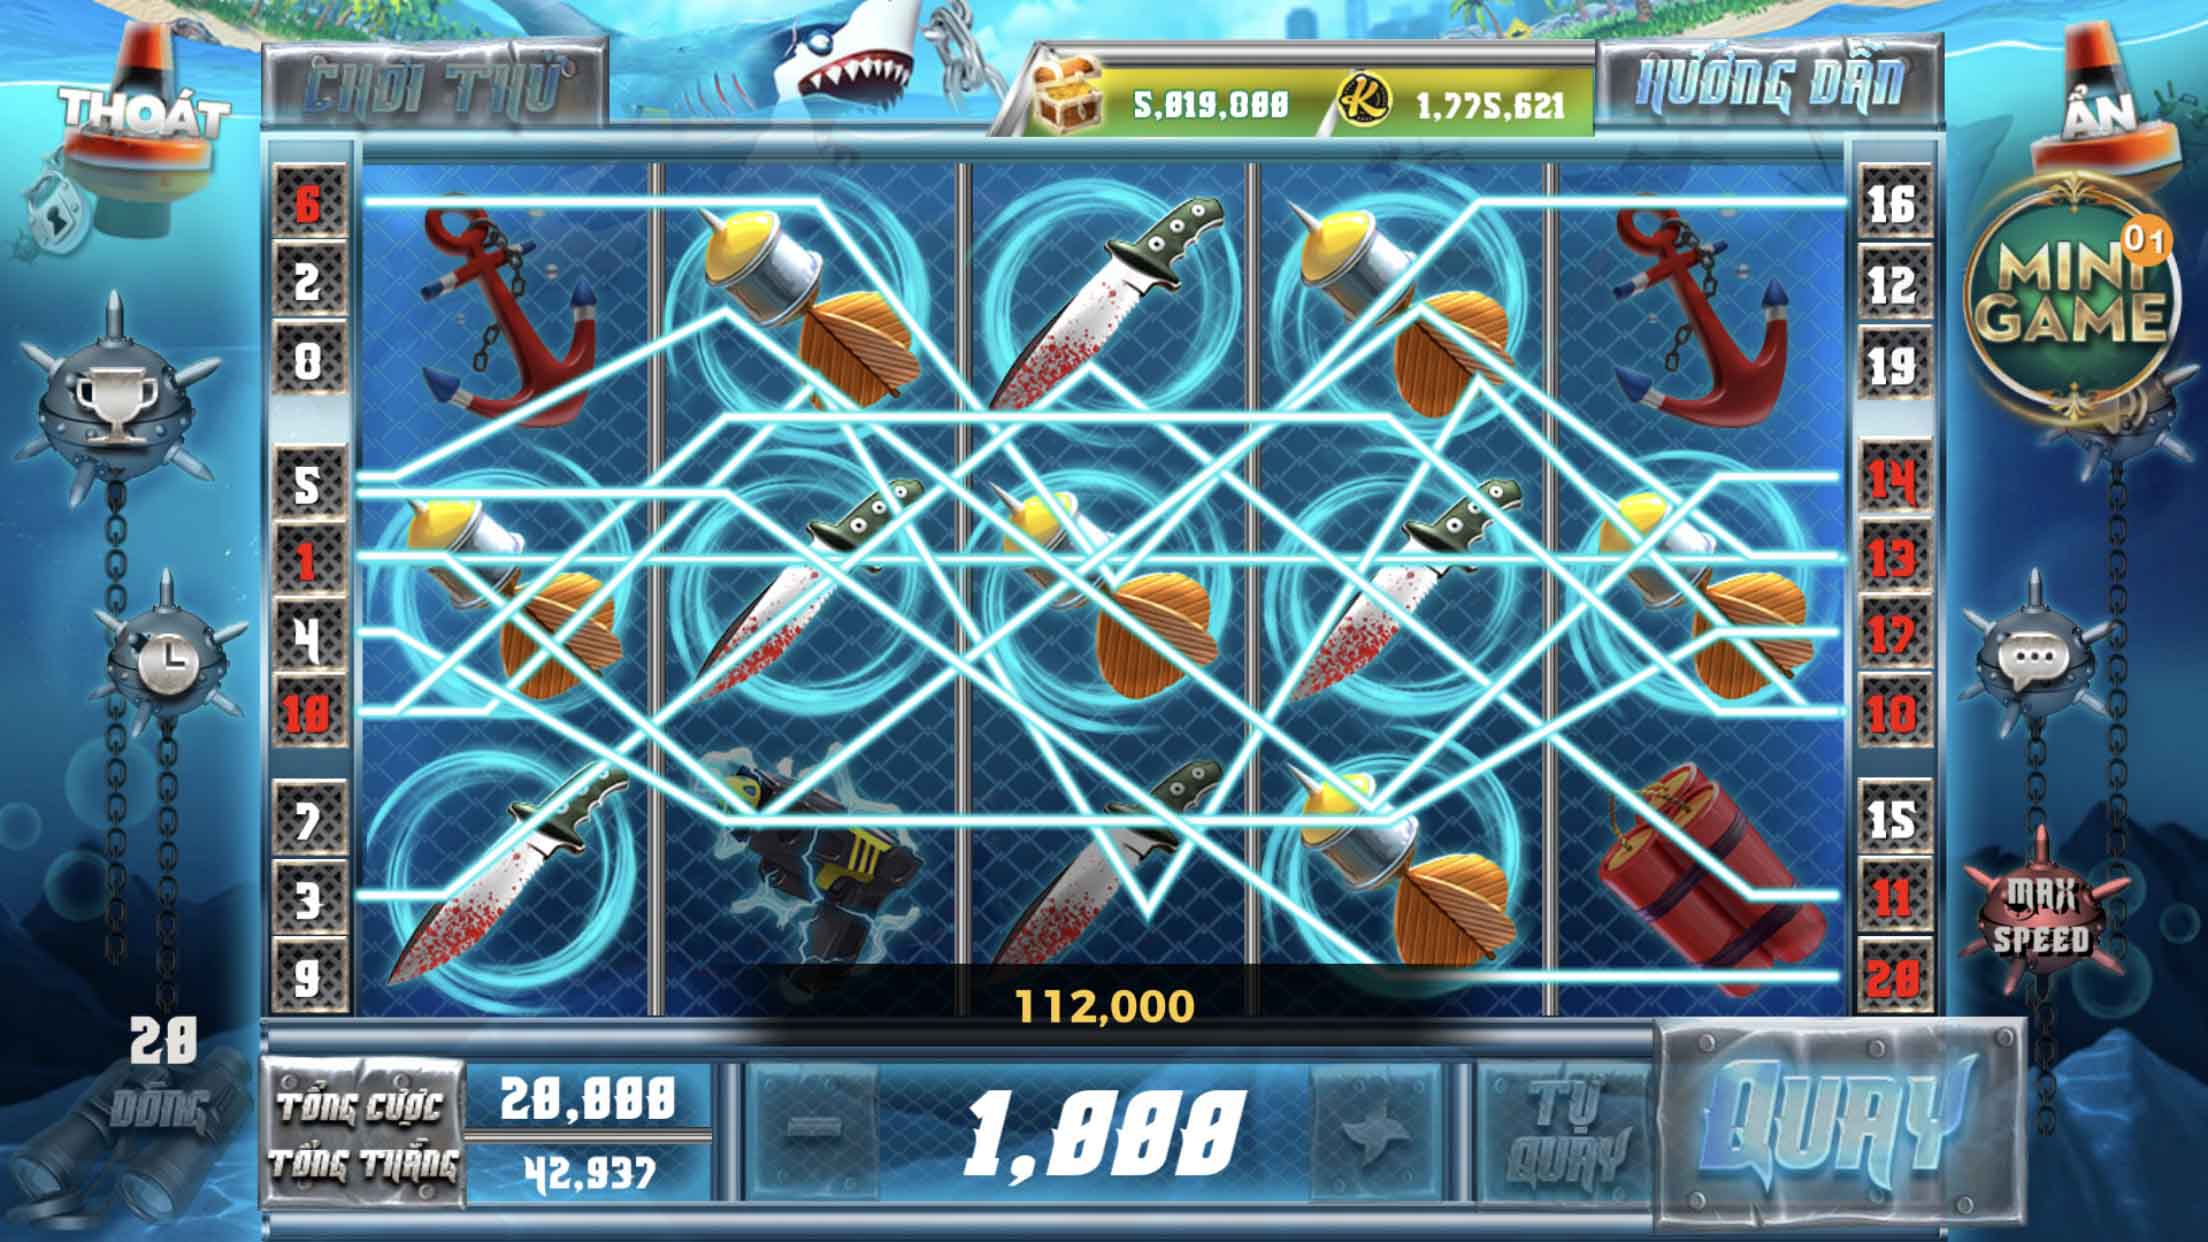 Giới thiệu về Slot game Săn Cá Mập tại cổng game Kingfun